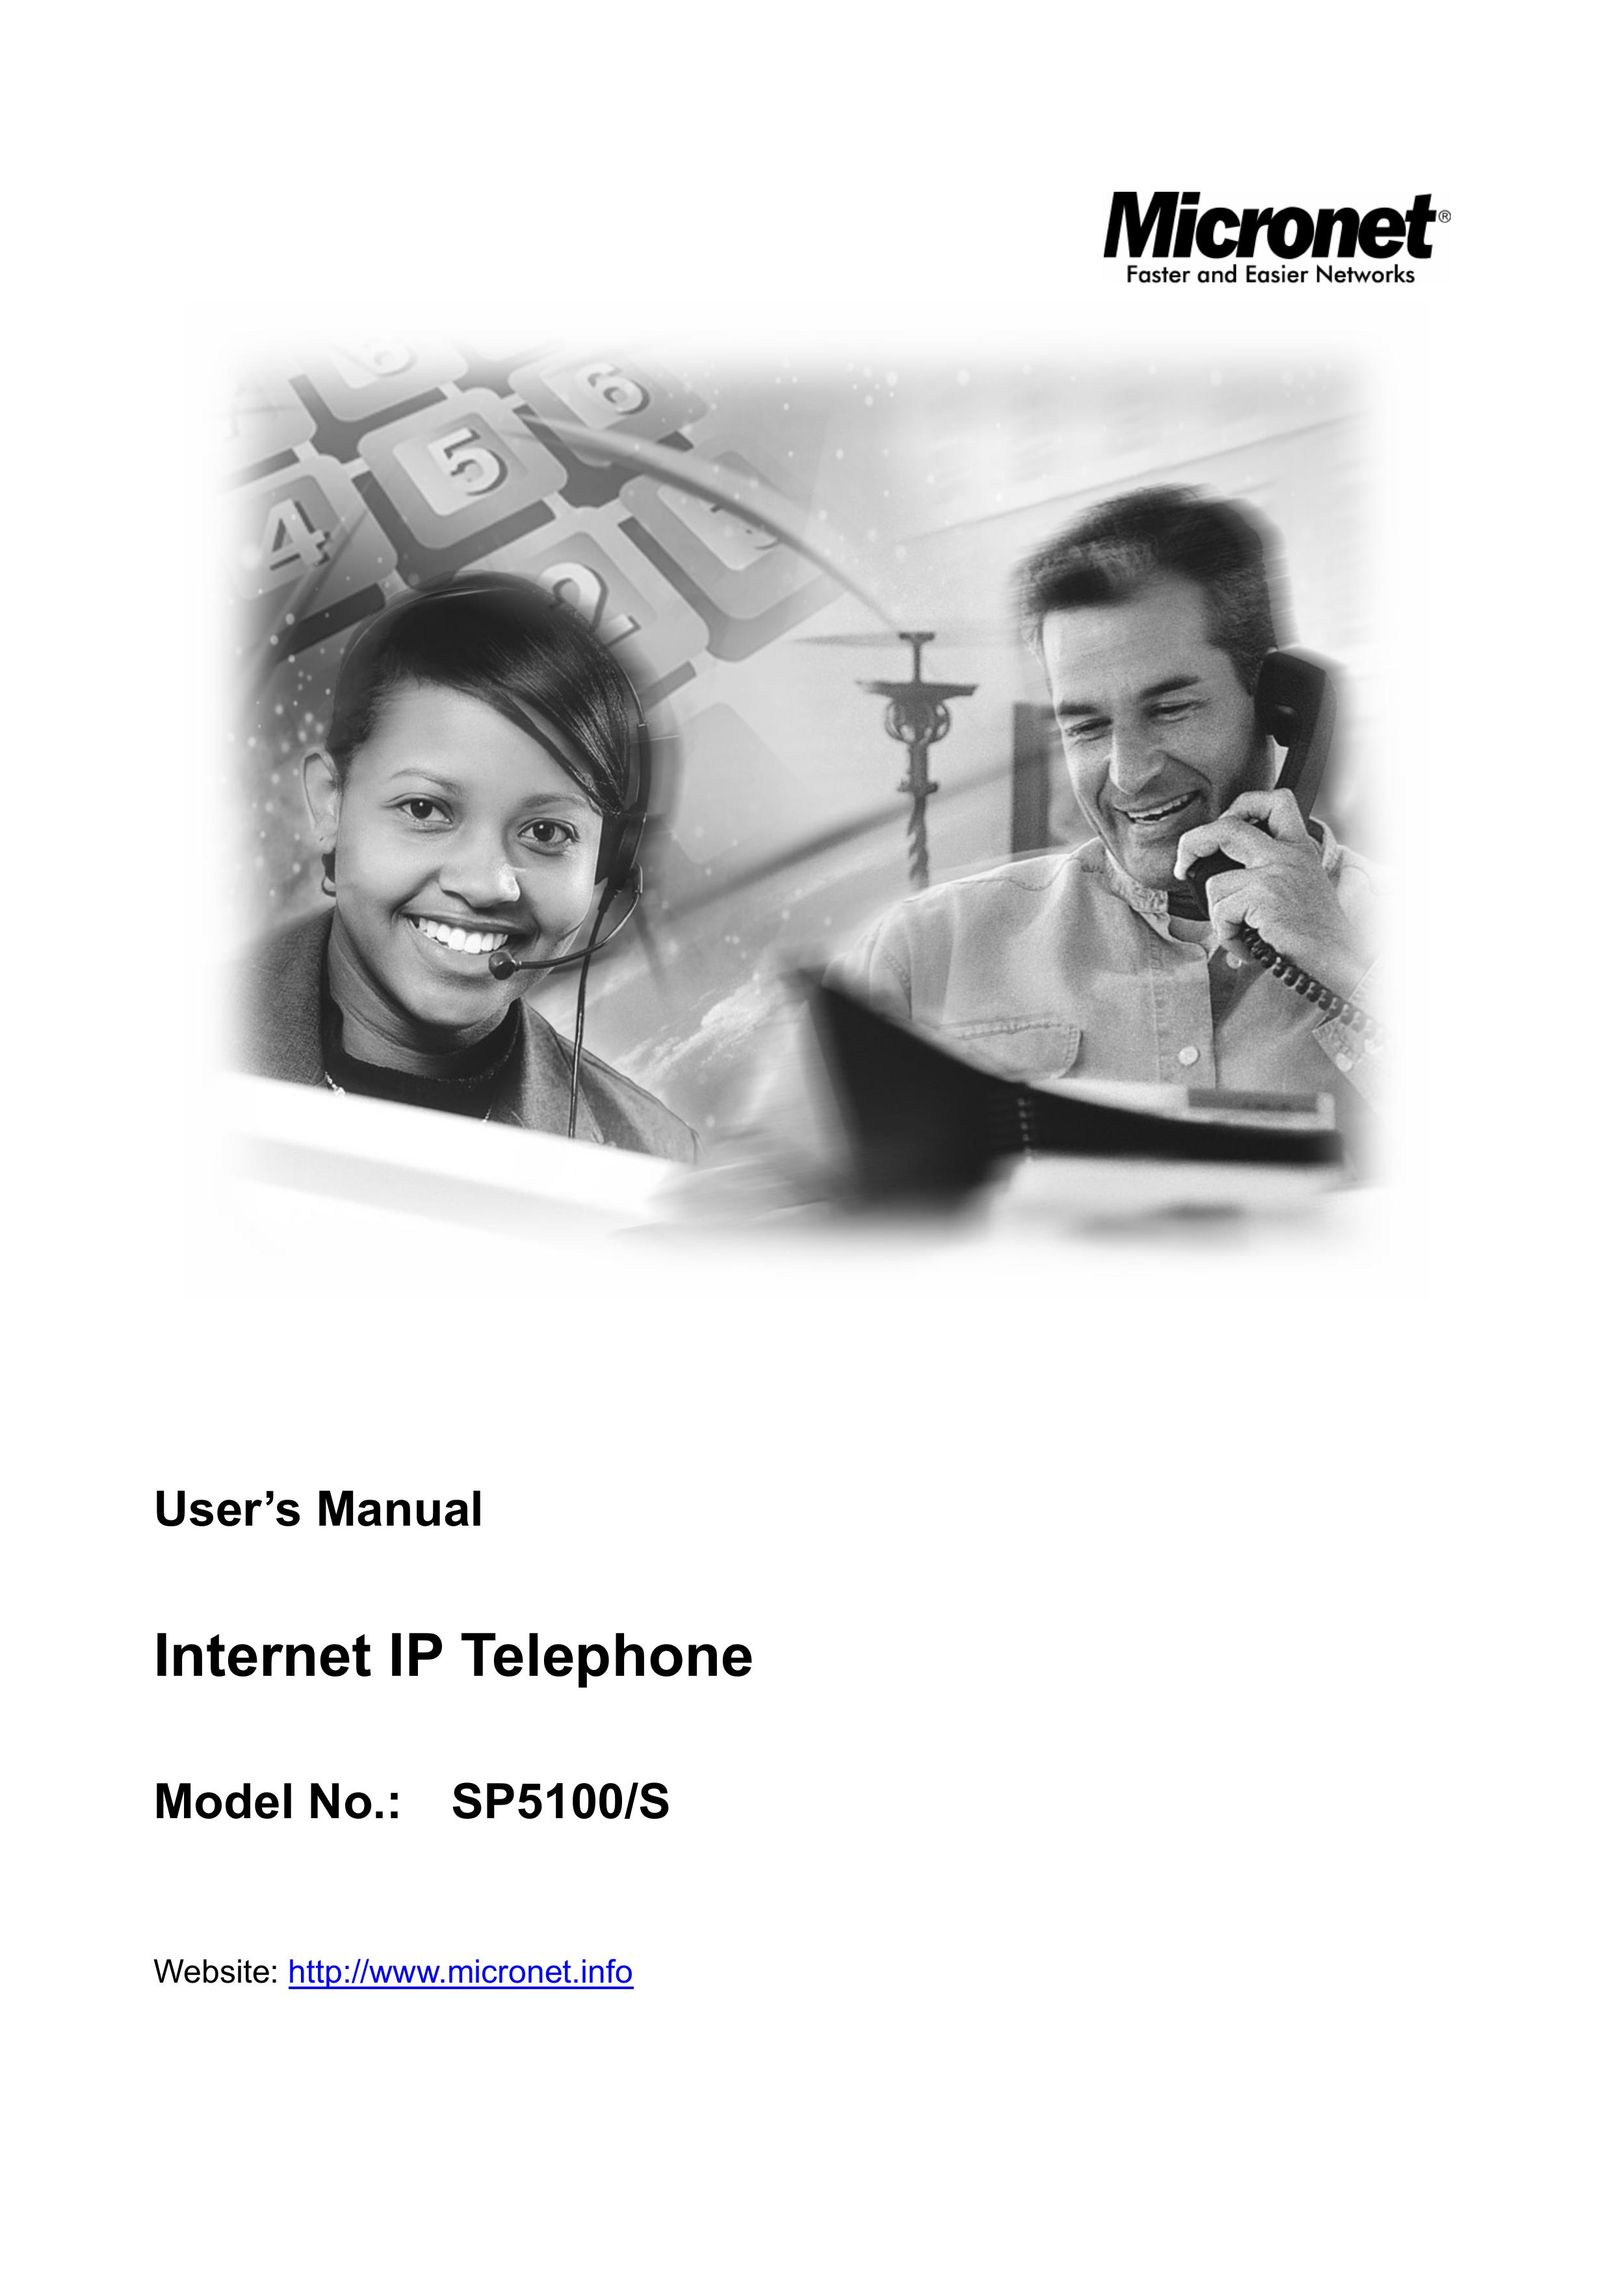 Microsoft SP5100/S IP Phone User Manual